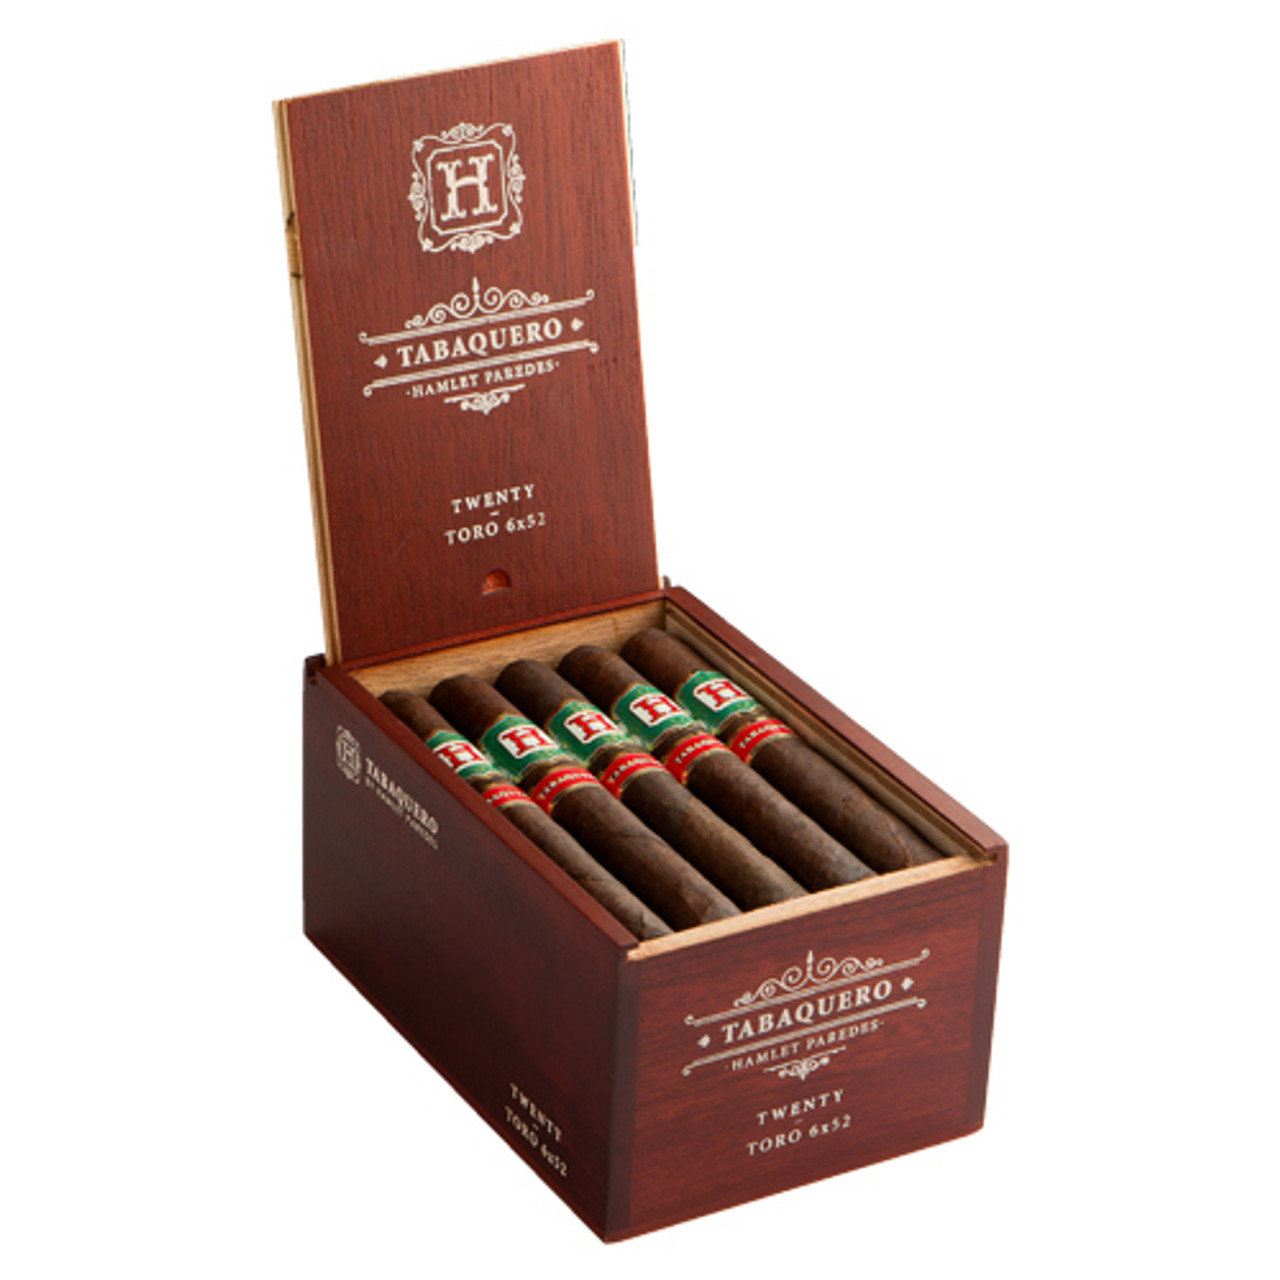 Tabaquero by Hamlet Paredes Bala Cigars - 5.75 x 58 (Box of 20) *Box